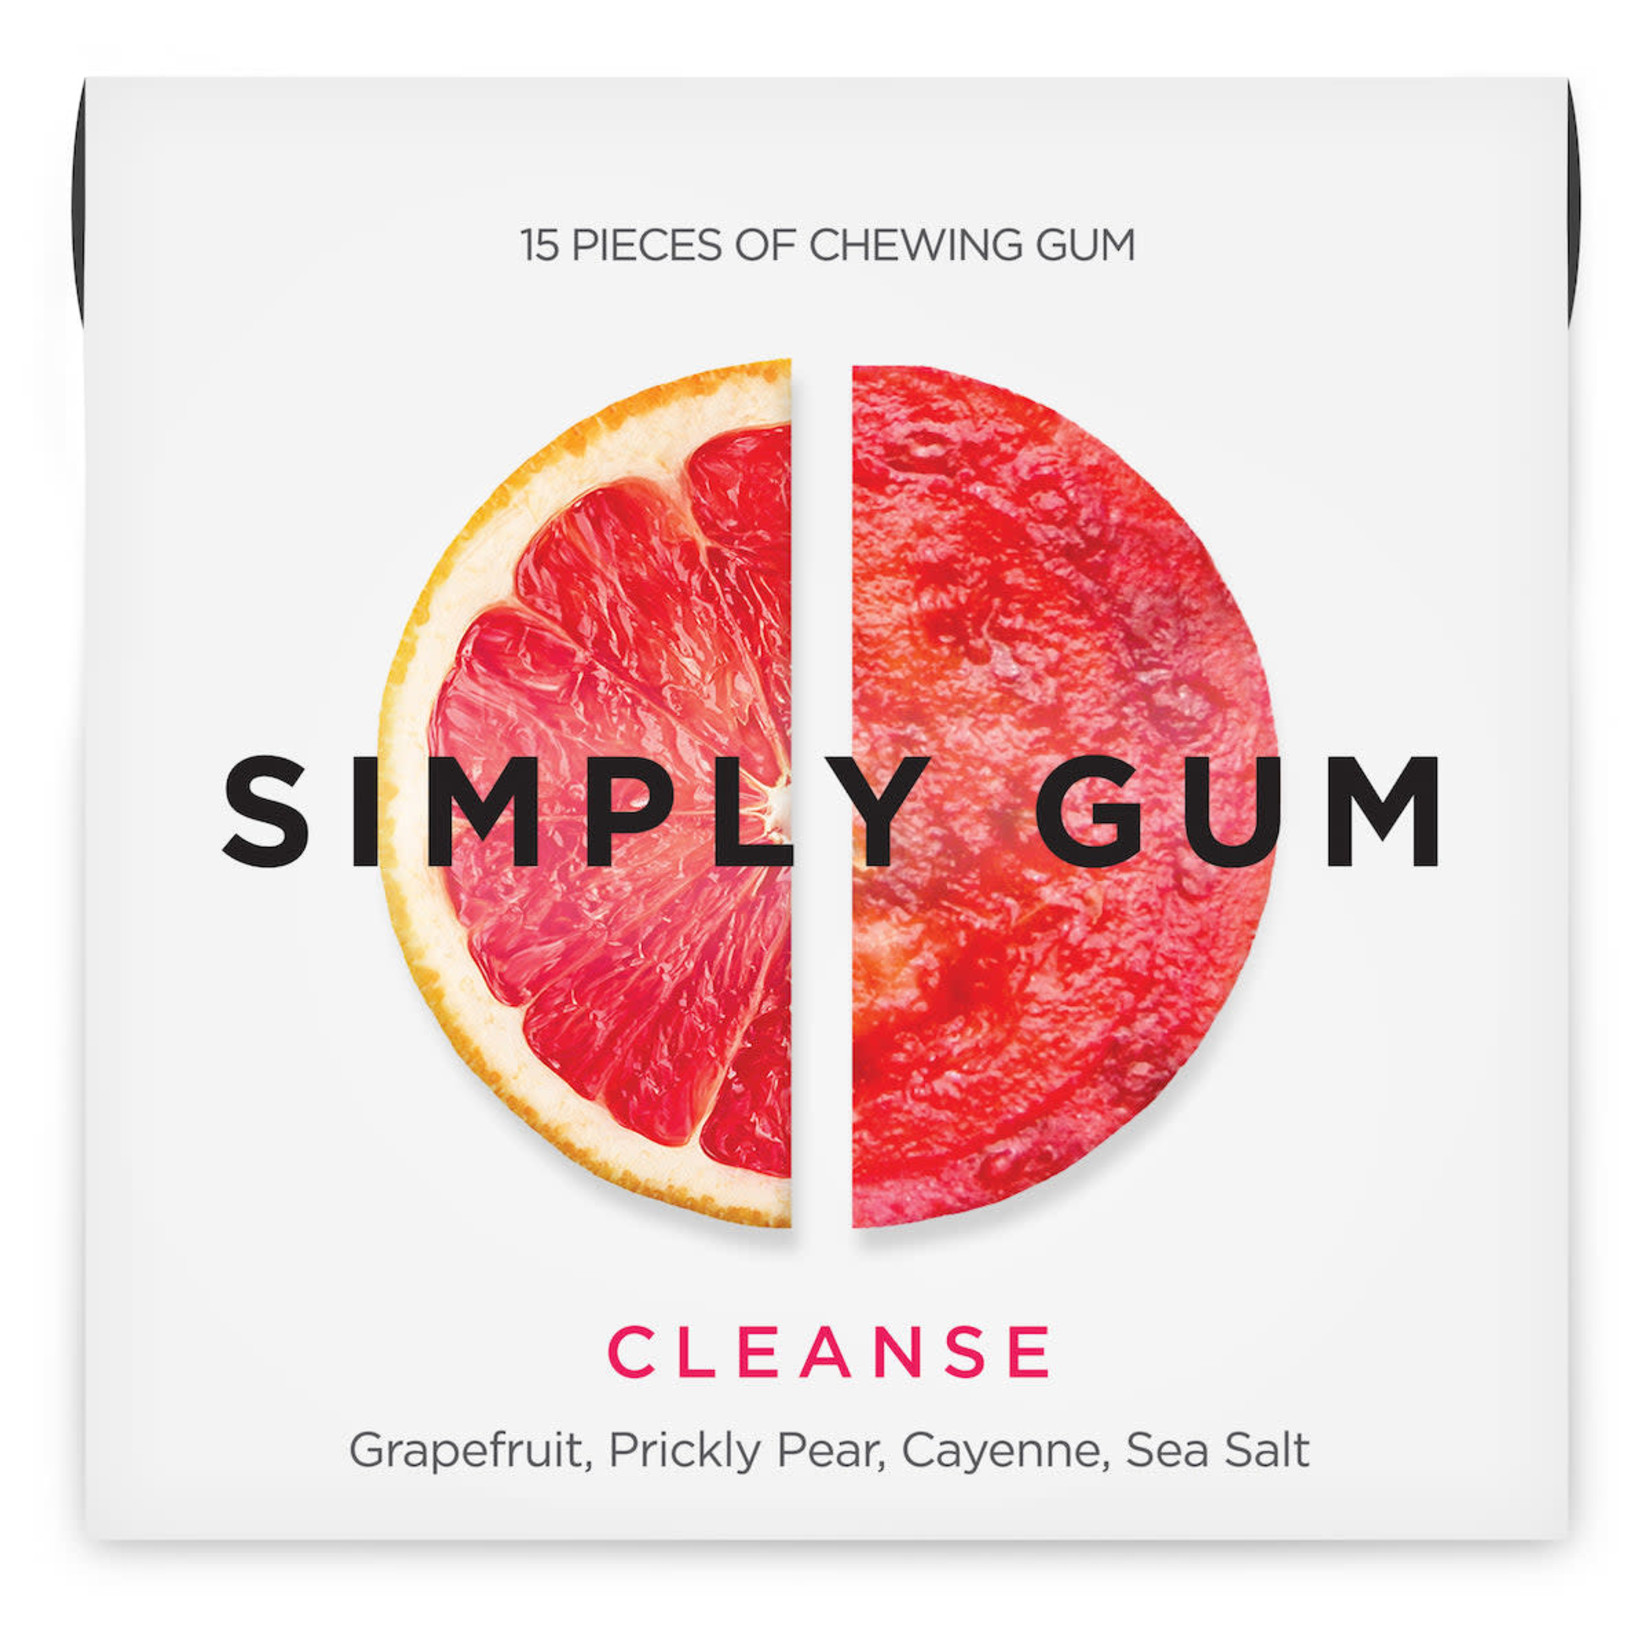 Simply Gum Simply Gum - Cleanse